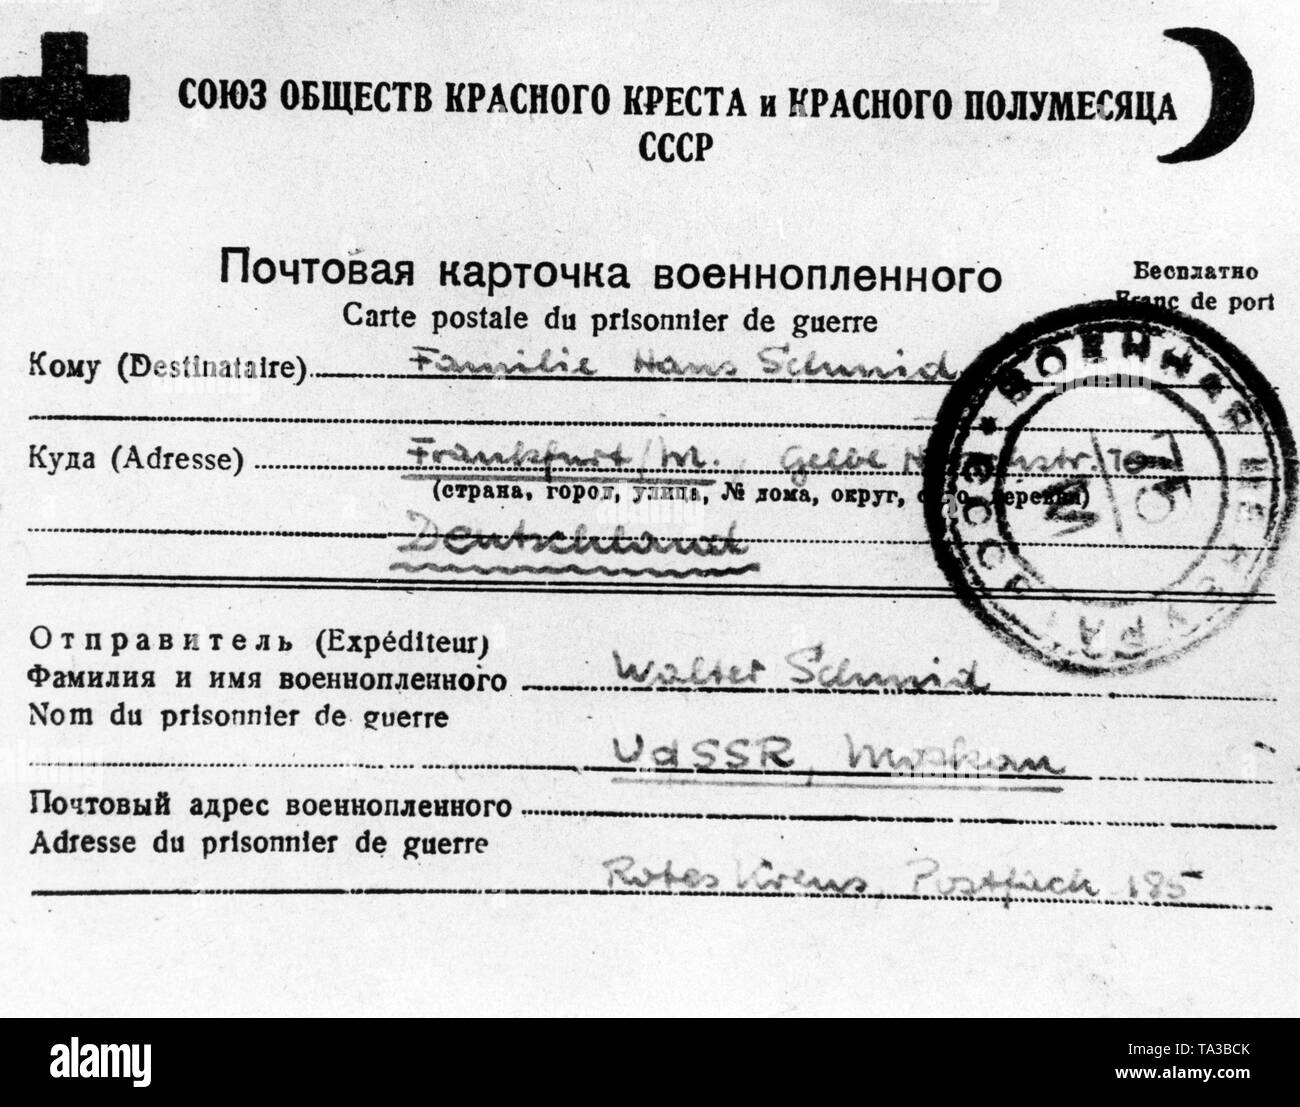 Eine Postkarte der russischen Roten Kreuz, auf der Rückseite die Kriegsgefangenen Nachrichten an den Empfänger schreiben könnte. Fast alle Karten wurden im August 1945 geschrieben und wurden sofort verschickt. Die Karten für Frankfurt am Main, wie das hier dargestellt wurde, kamen am 29.12.1945. Stockfoto